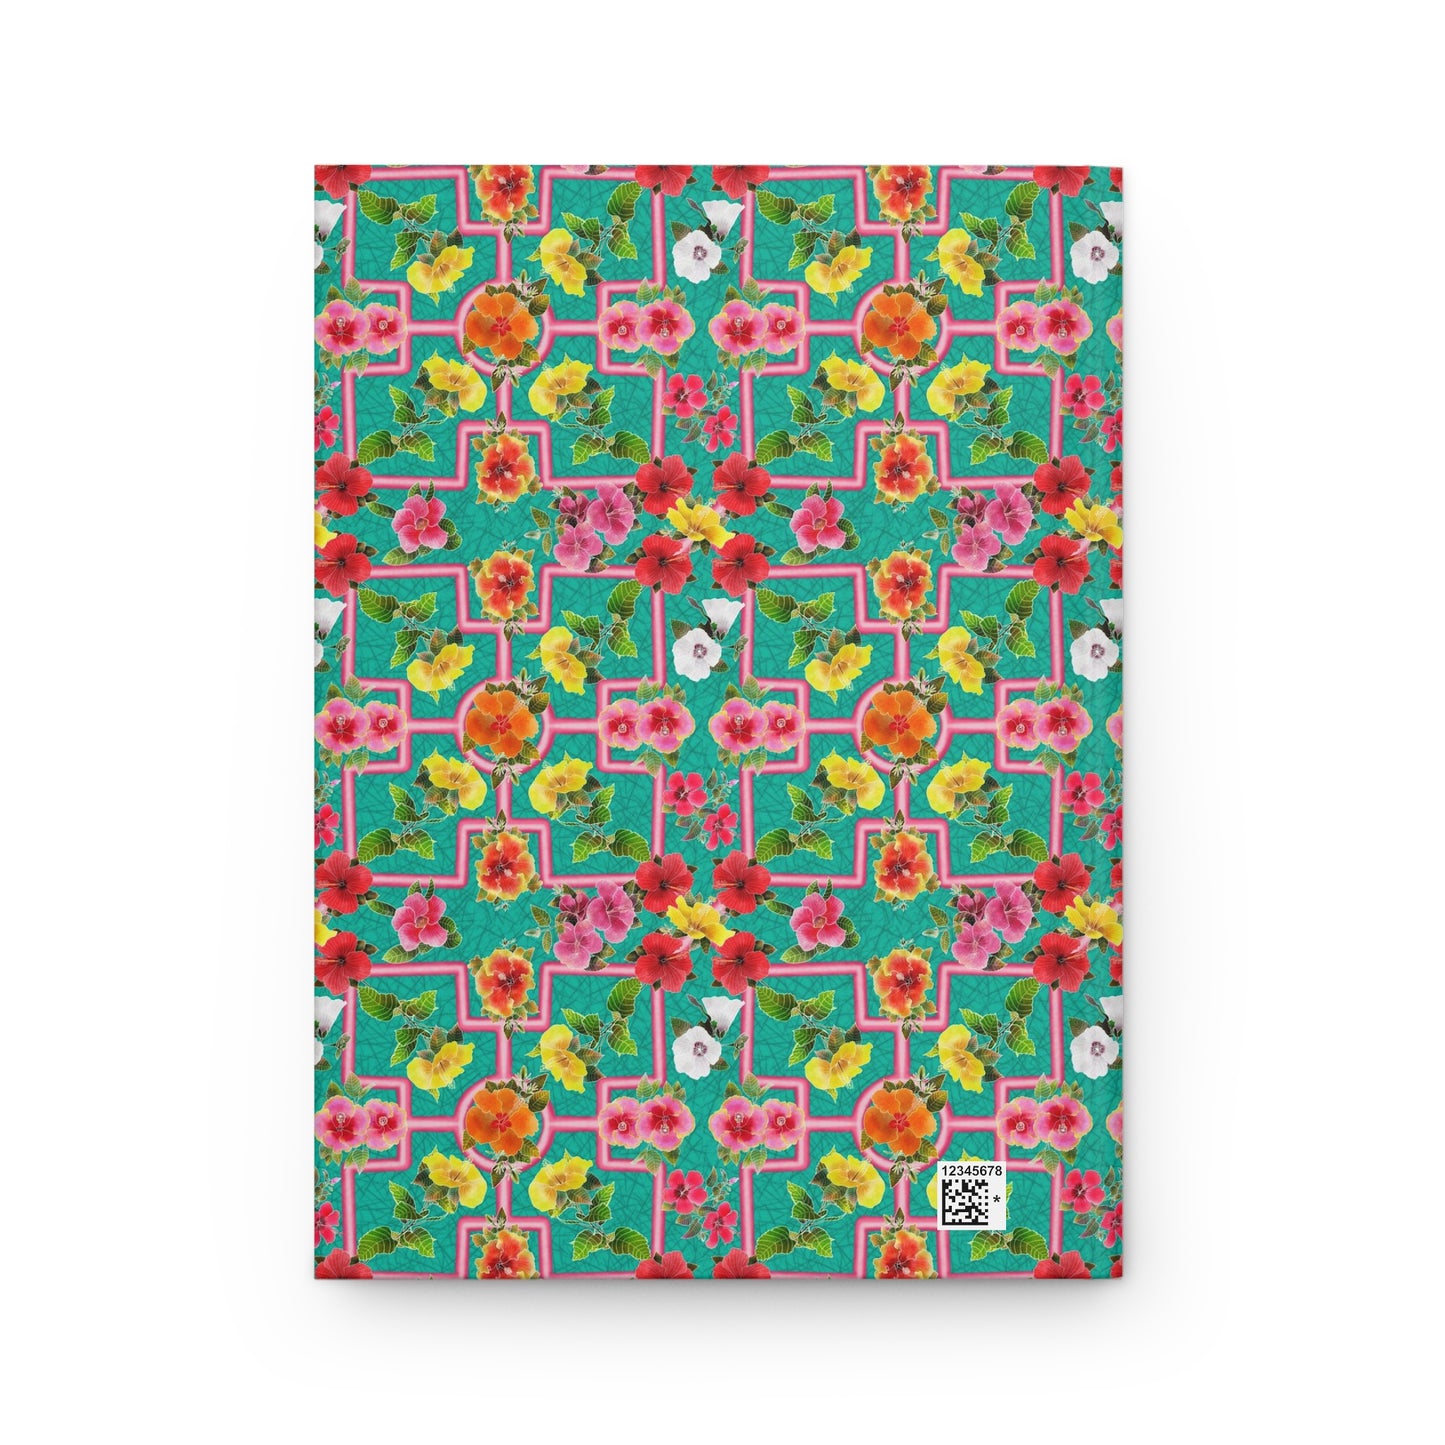 Formal Hibiscus Garden Hardcover Journal Matte